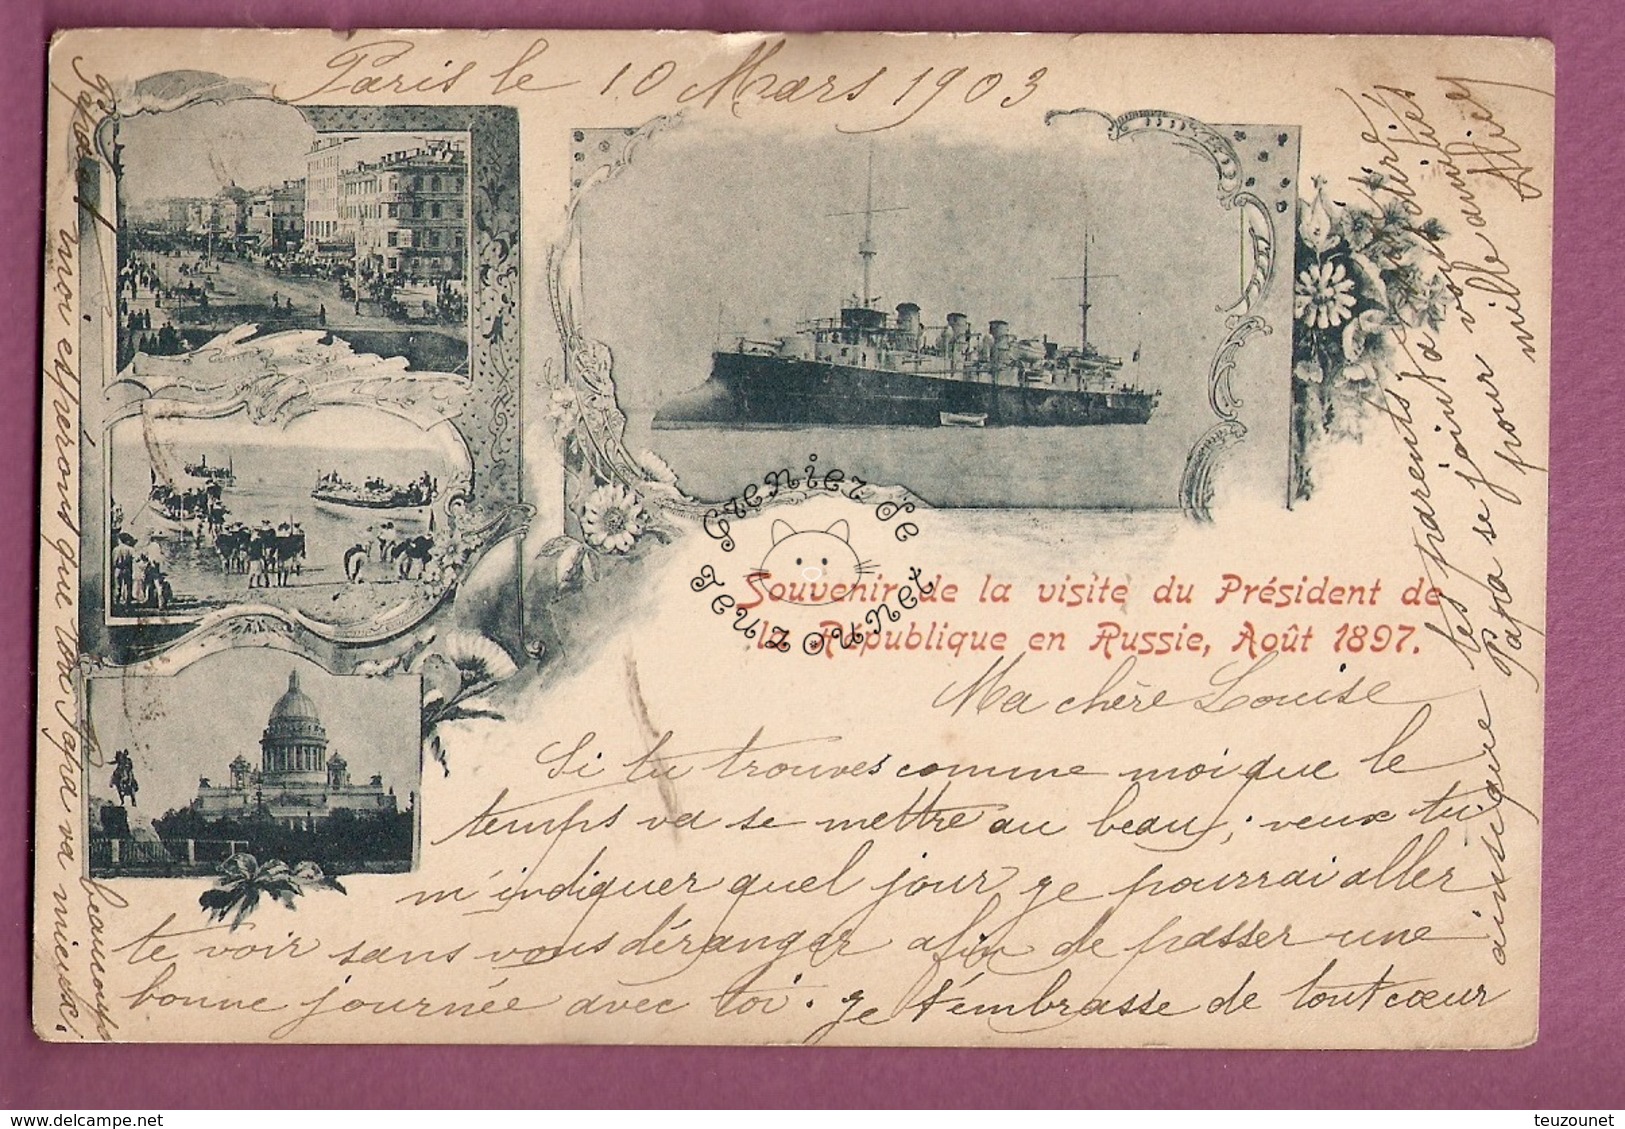 Cpa Souvenir De La Visite Du President De La Republique En Russie, Aout 1897 - Eventi